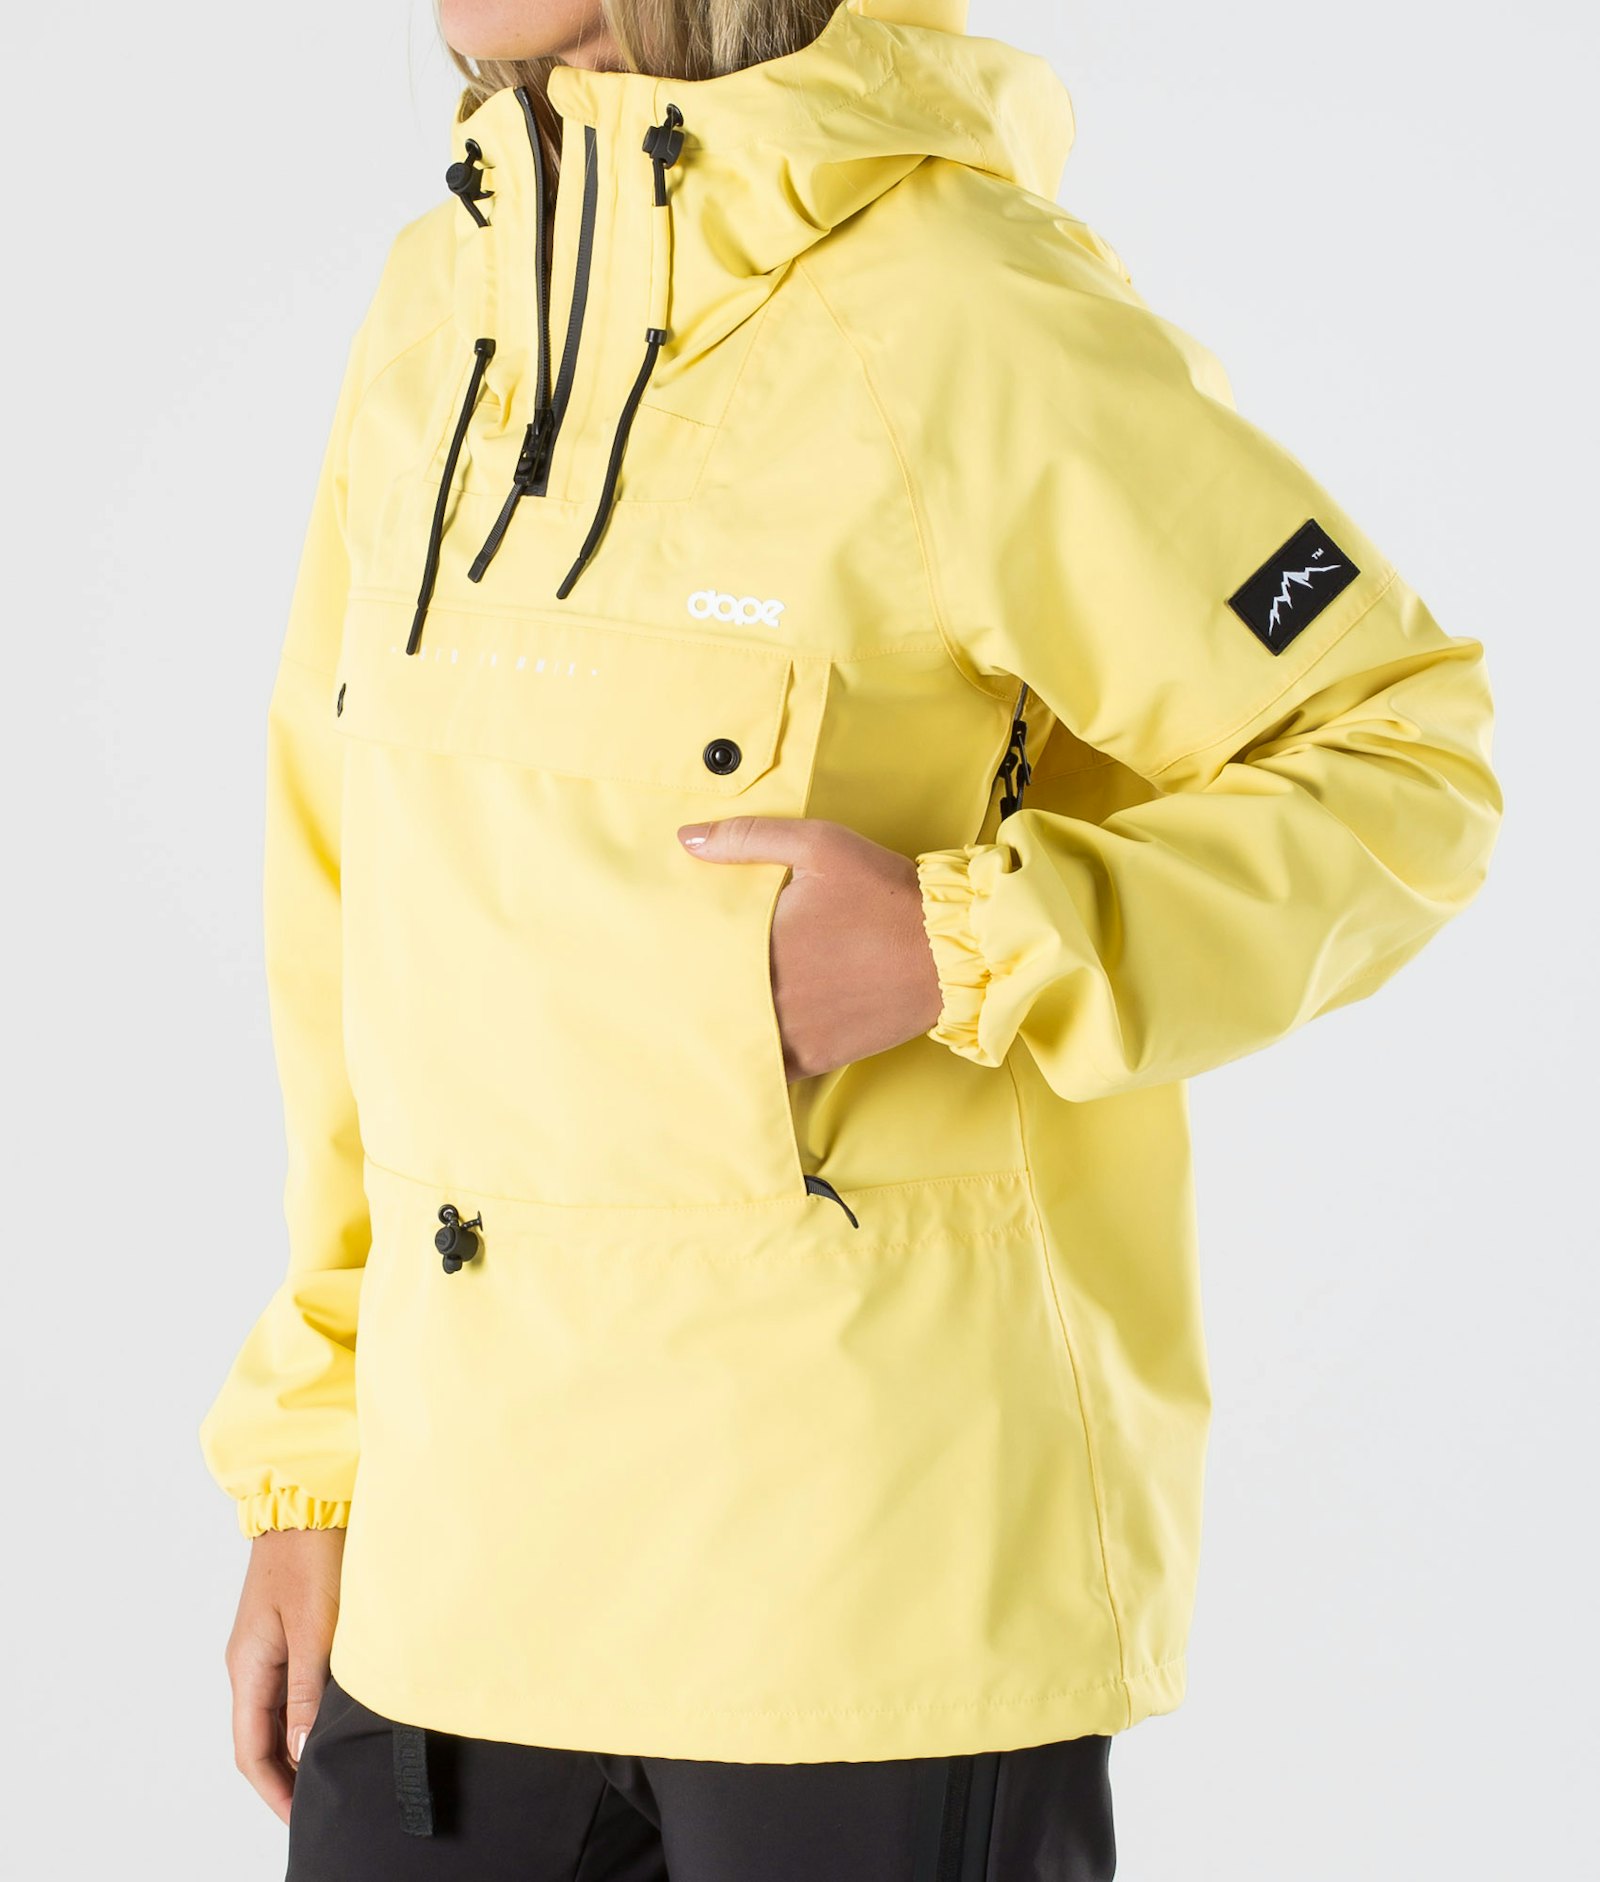 Hiker W 2020 Outdoor Jacket Women Yellow, Image 4 of 10